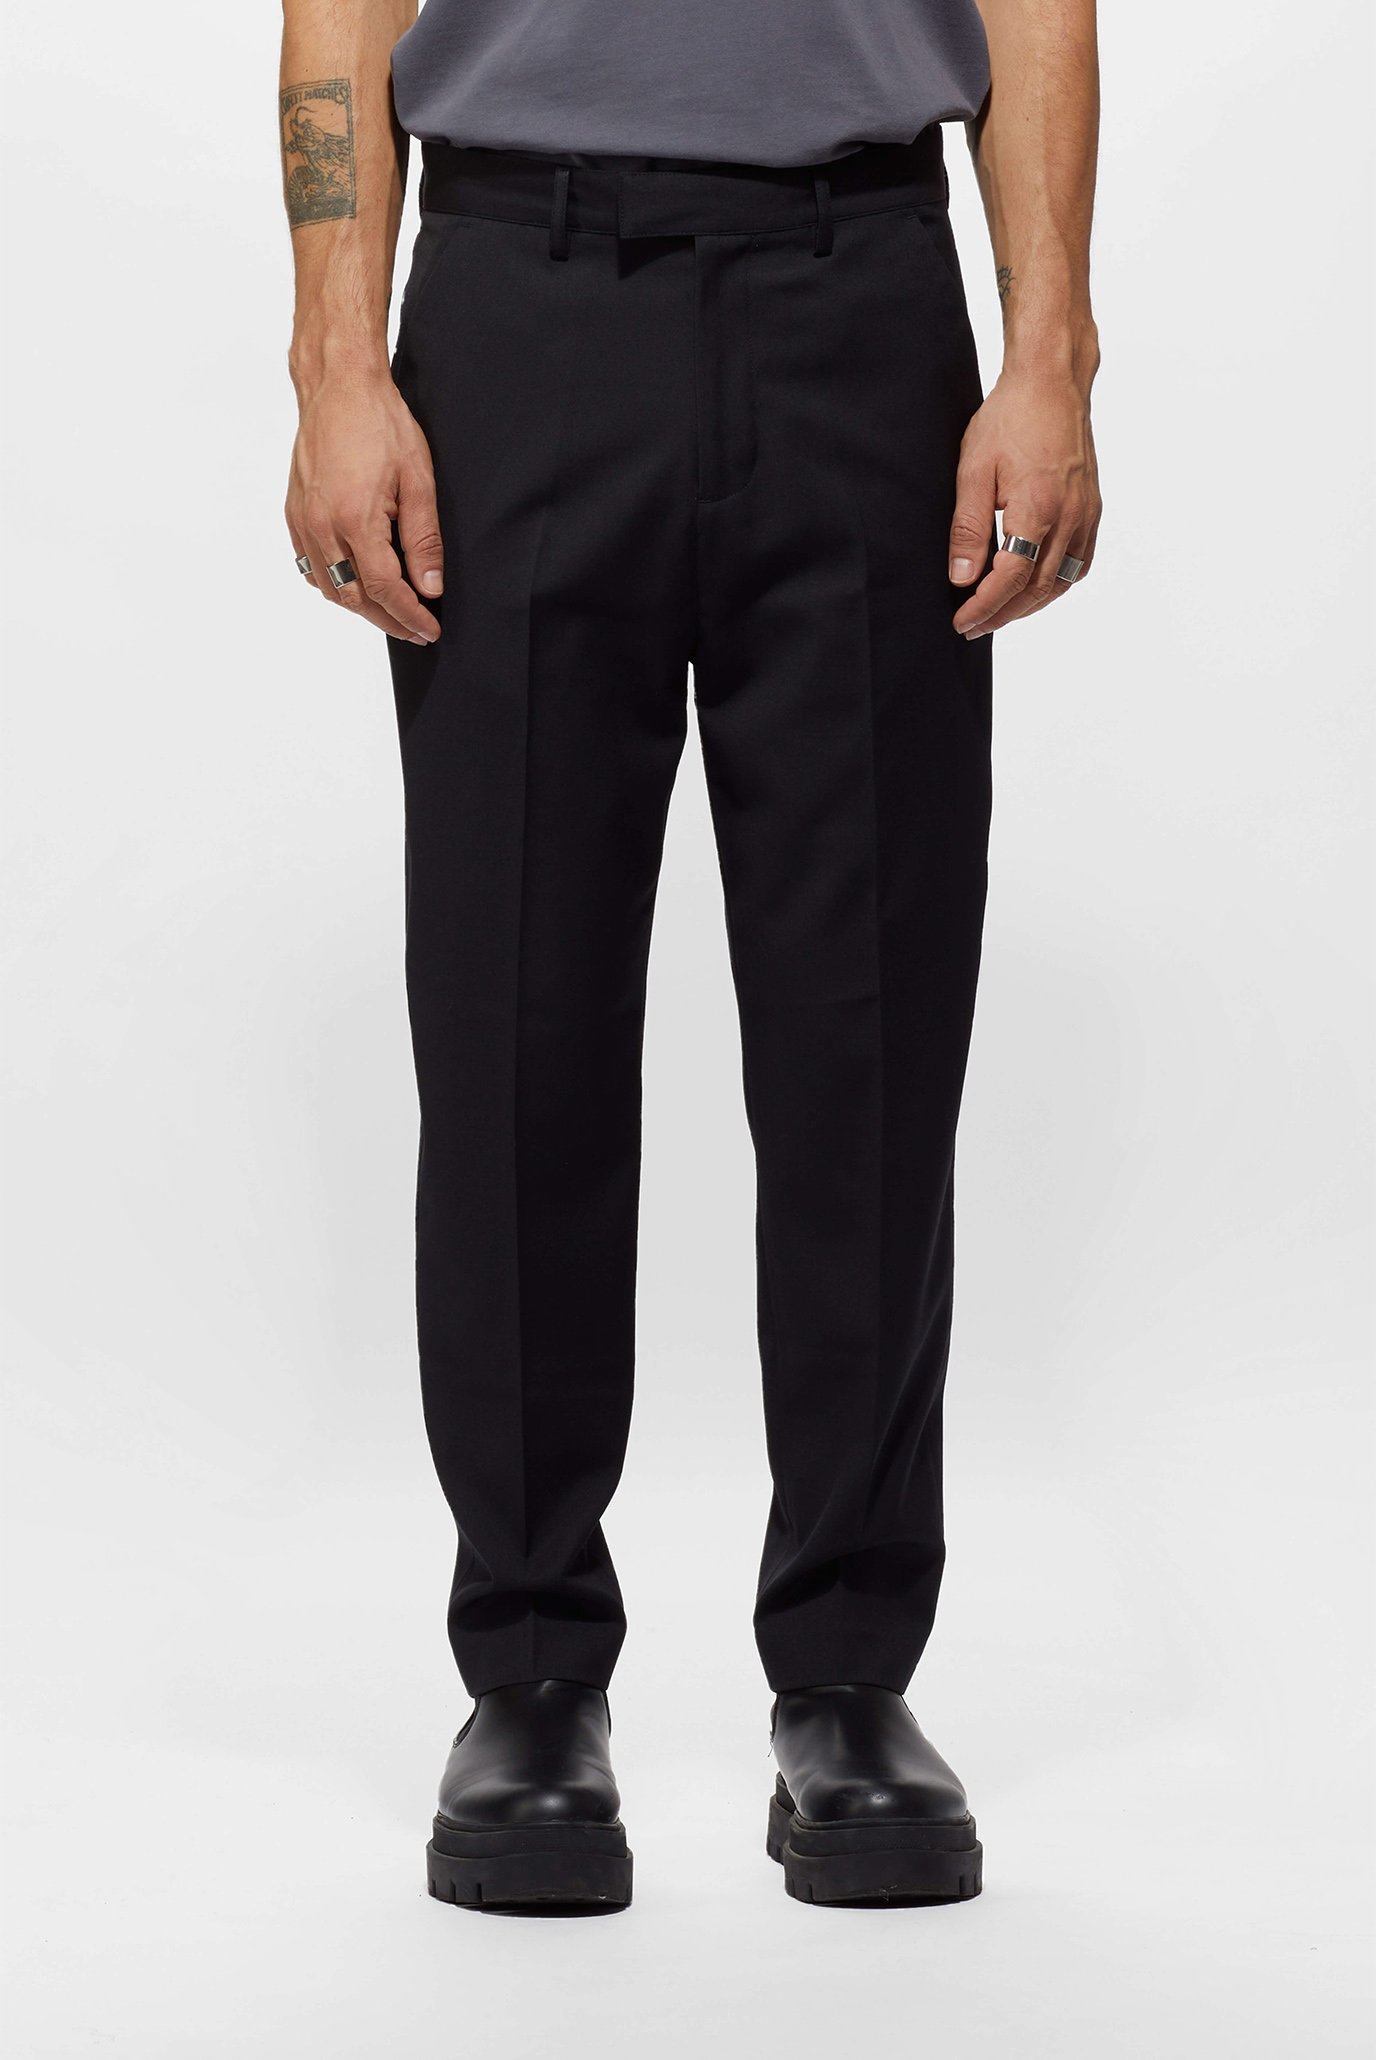 Чоловічі чорні брюки Toni woven 231 1